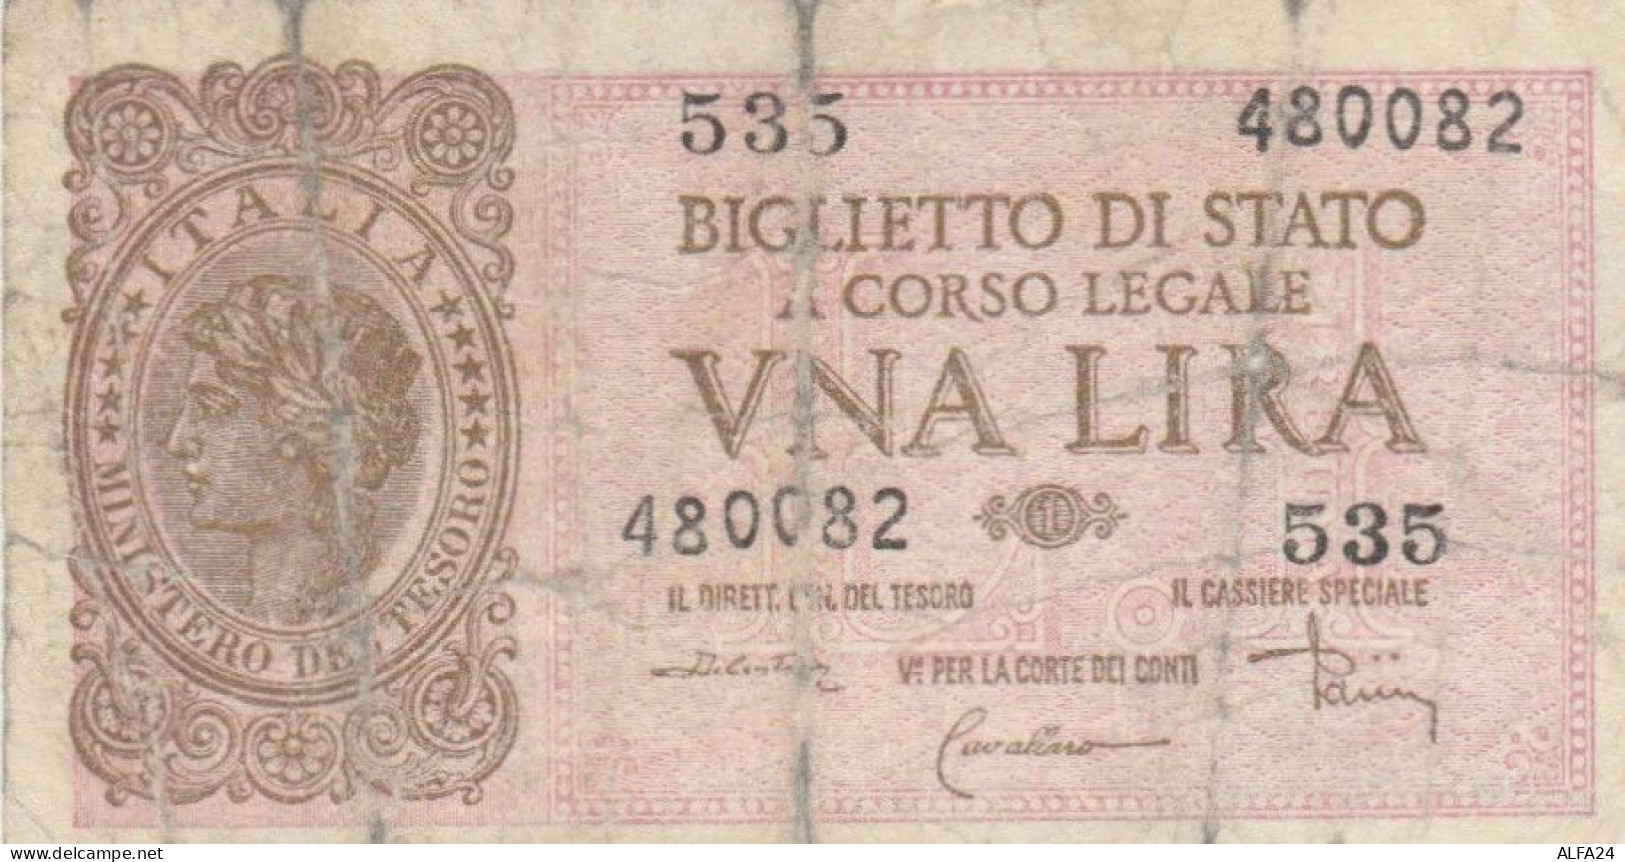 BIGLIETTO DI STATO  ITALIA 1 LIRA - F (BN161 - Italia – 1 Lira